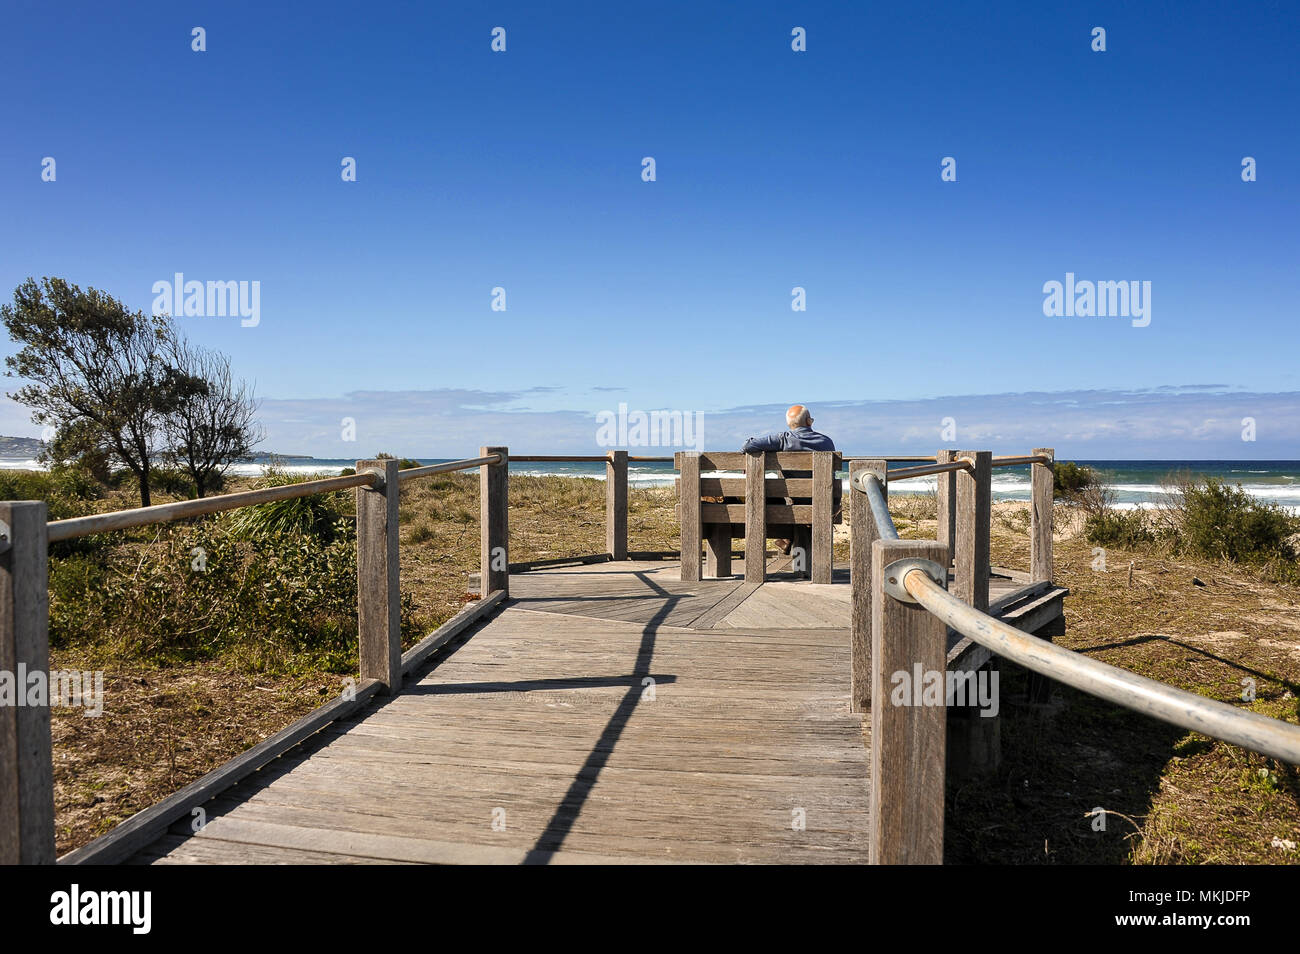 L'homme se détend sur banc en bois, à regarder les vagues le long de Seven Mile Beach, Australie. Scène côtière, promenade en bois, dunes herbeuses et ciel bleu Banque D'Images